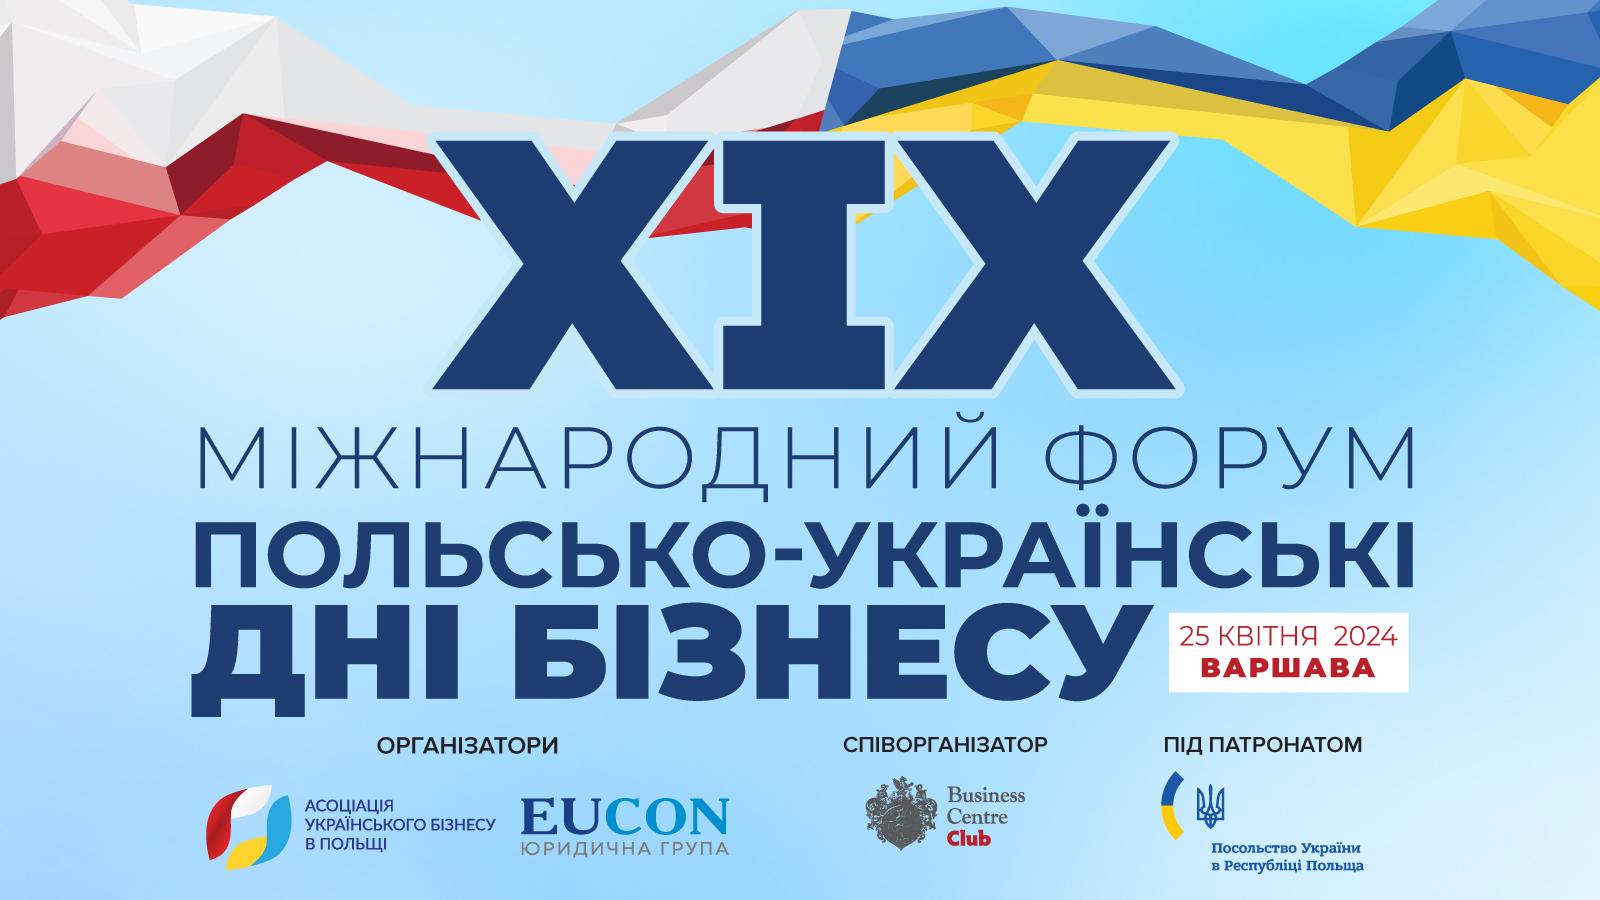 XIX Международный форум «Польско-украинские дни бизнеса»